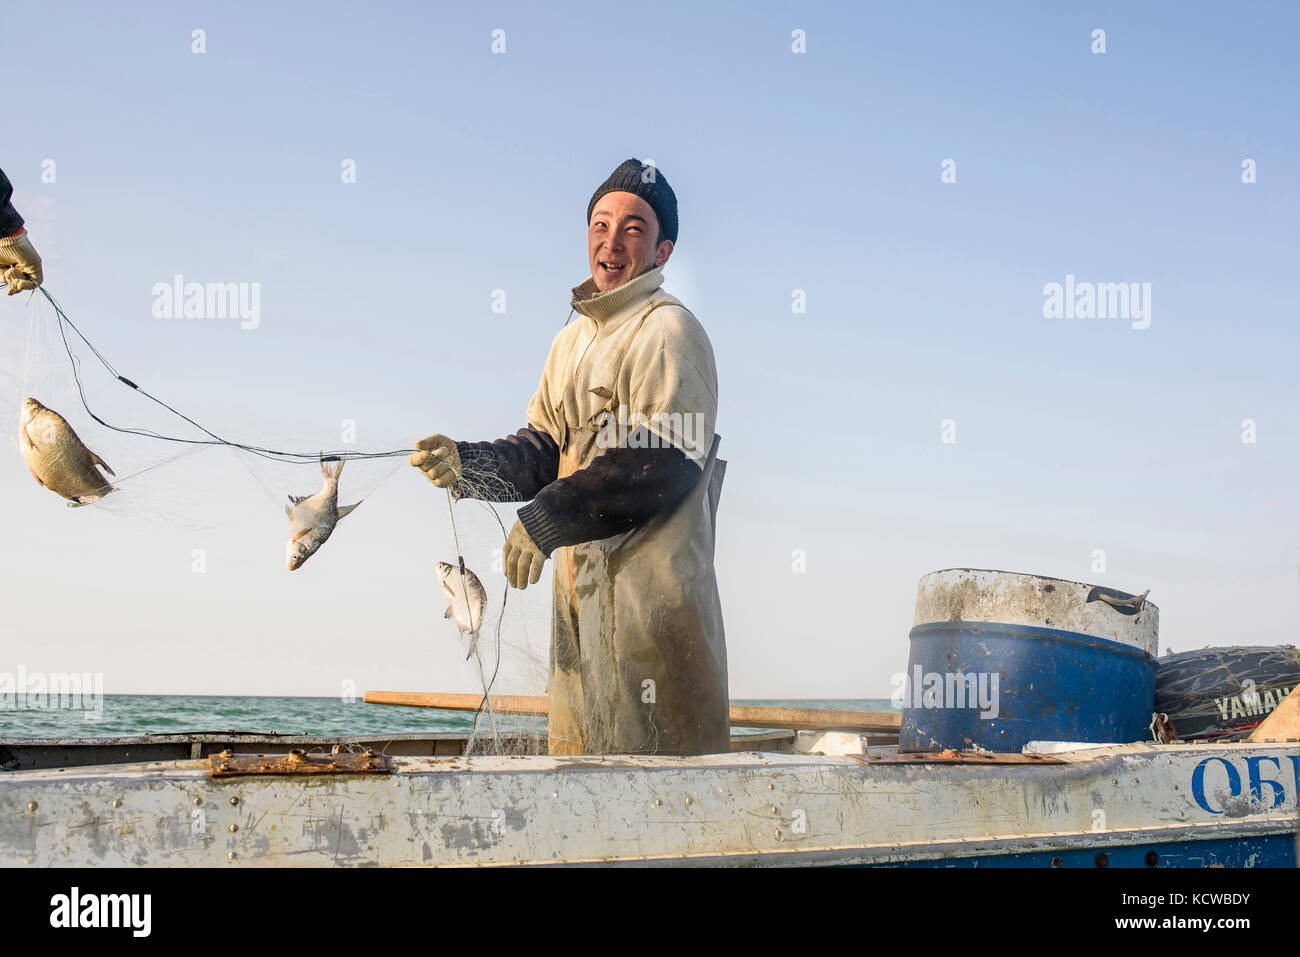 Les pêcheurs de Tastubek embarquent généralement dans de petits bateaux. Omirserik Ibragimov a 23 ans, il travaille avec son ami Kanat. Il vit à Tastubek dans le Th Banque D'Images